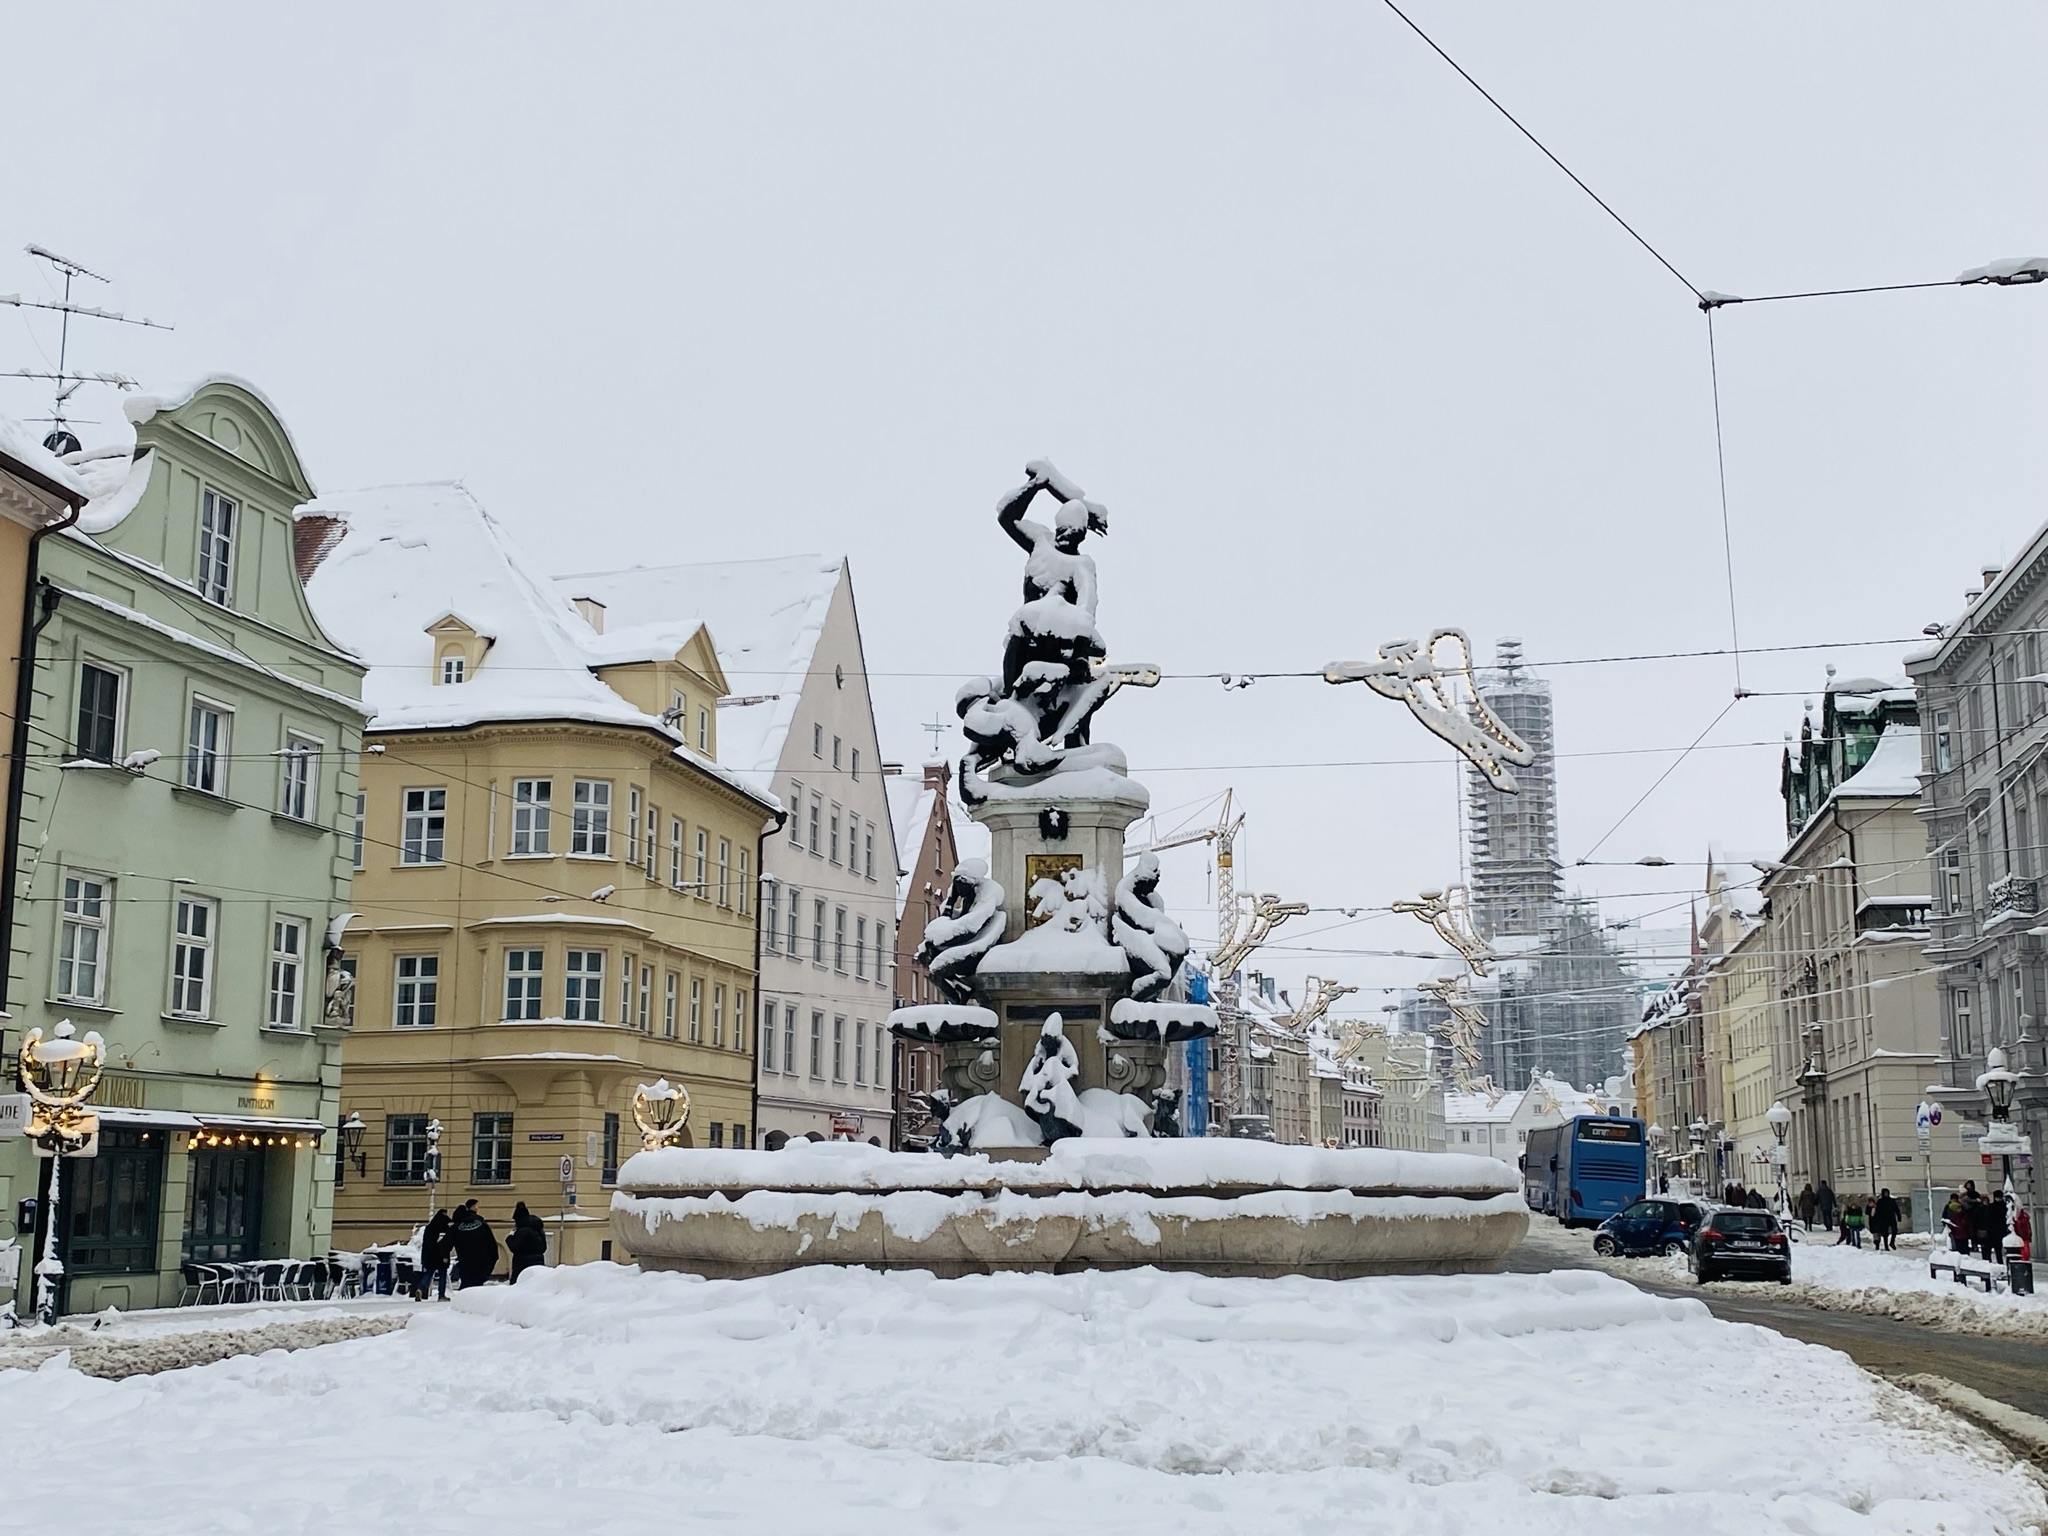 Herkulesbrunnen mit Schnee bedeckt, im Hintergrund St. Ulrich